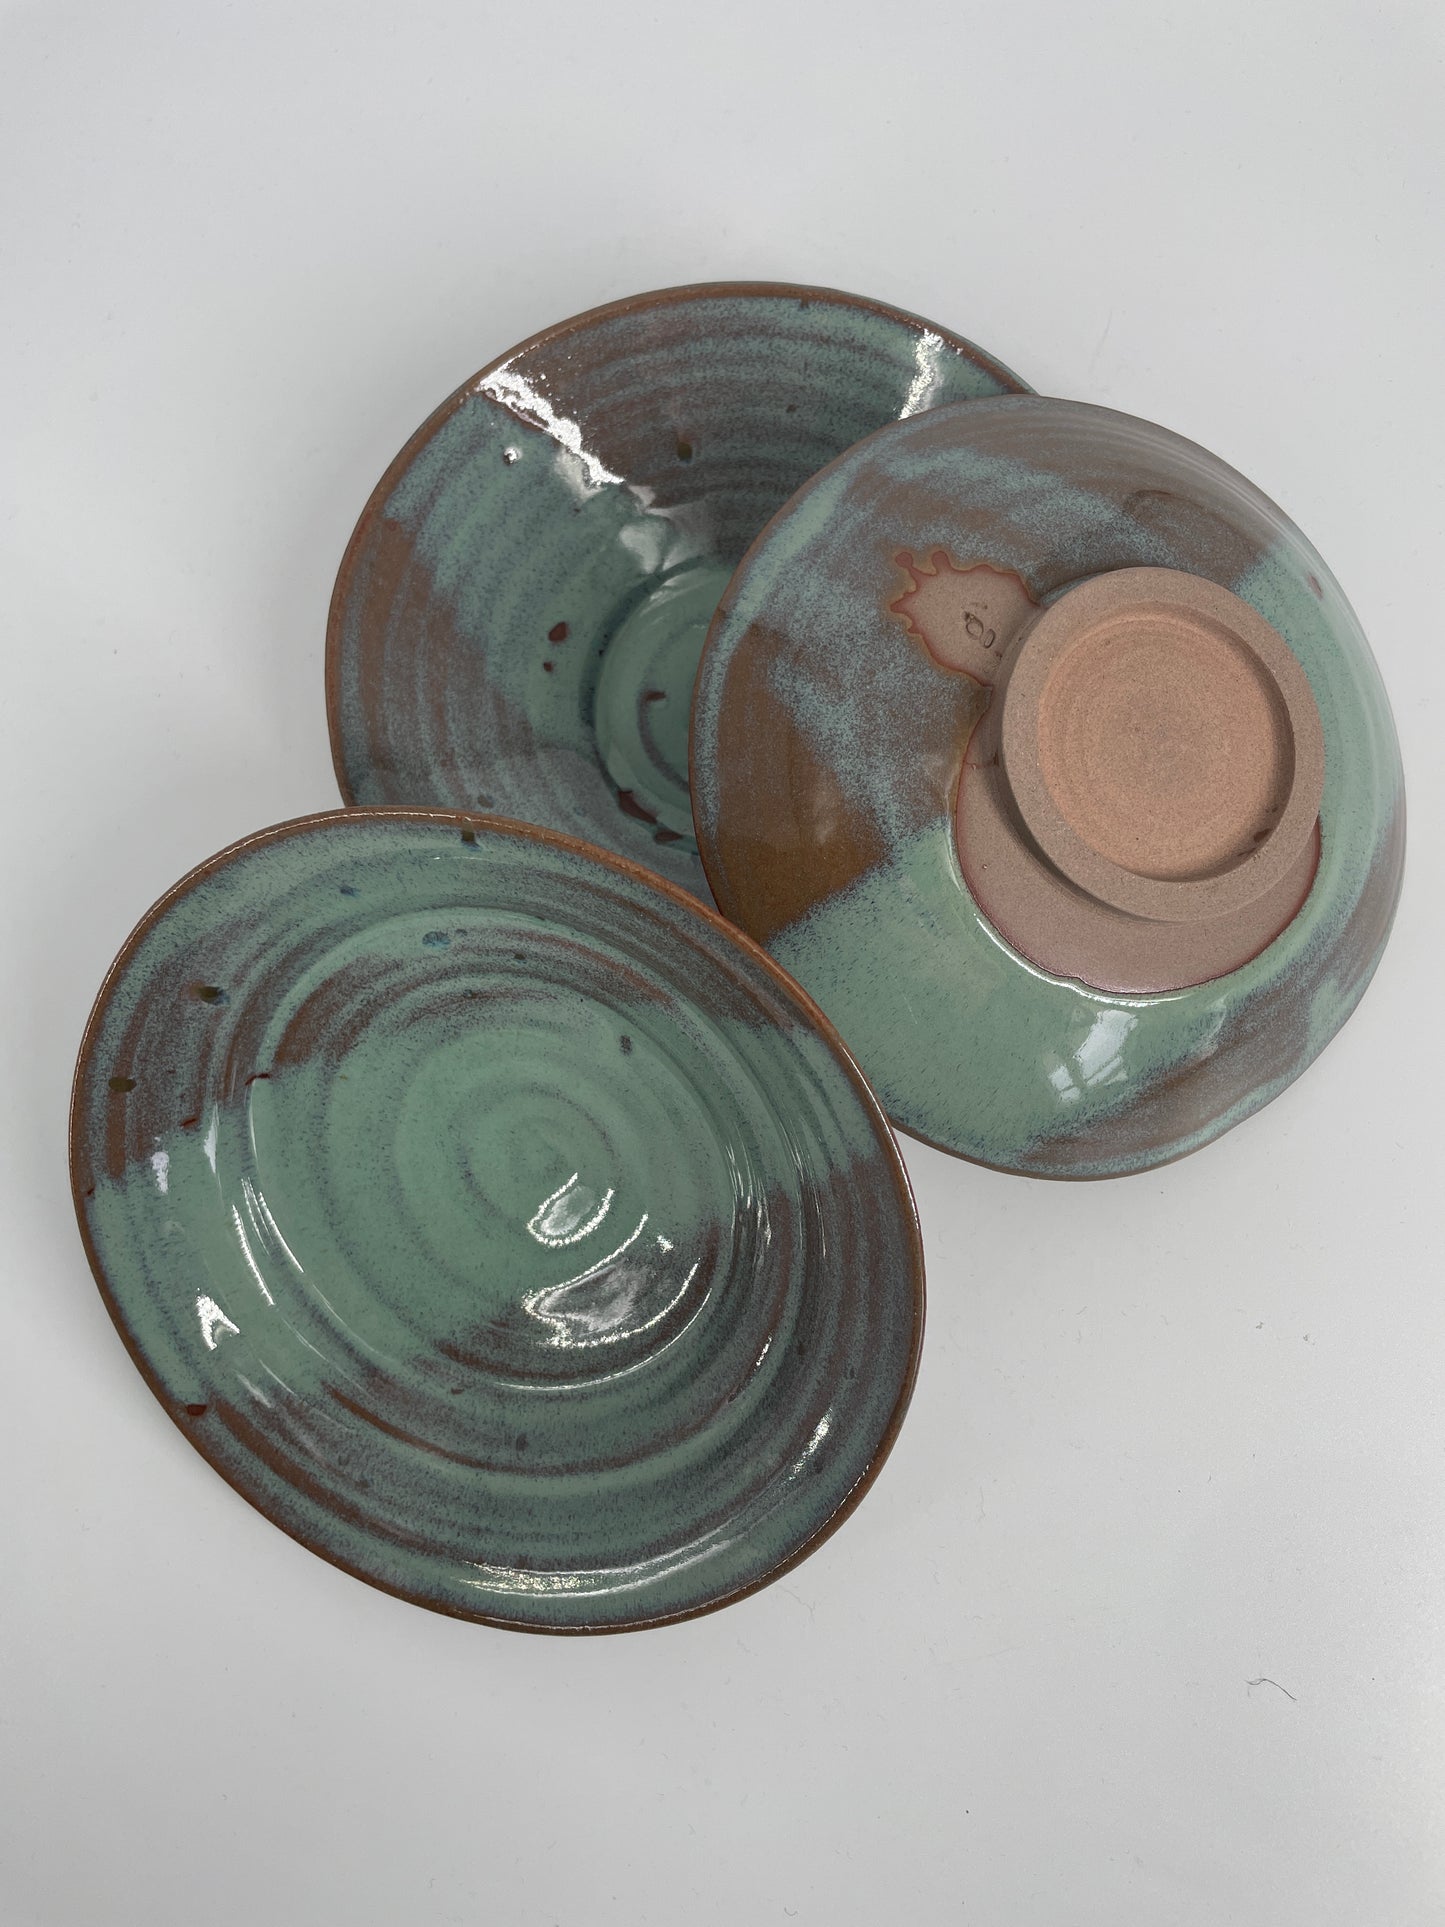 3 green bowls - small